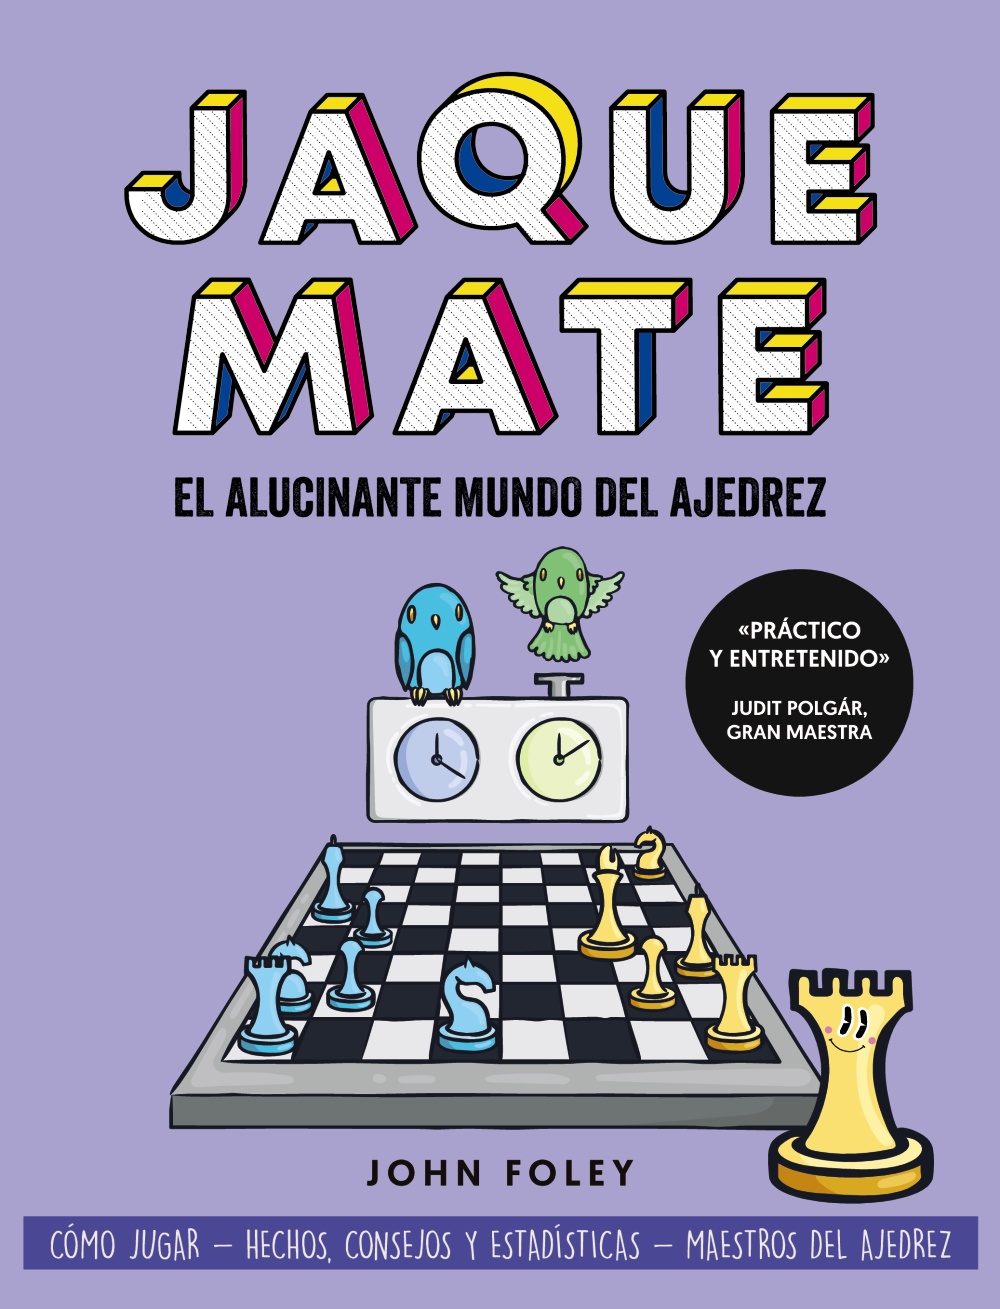 jaque-mate-el-alucinante-mundo-del-ajedrez-978-84-415-4800-8.jpg